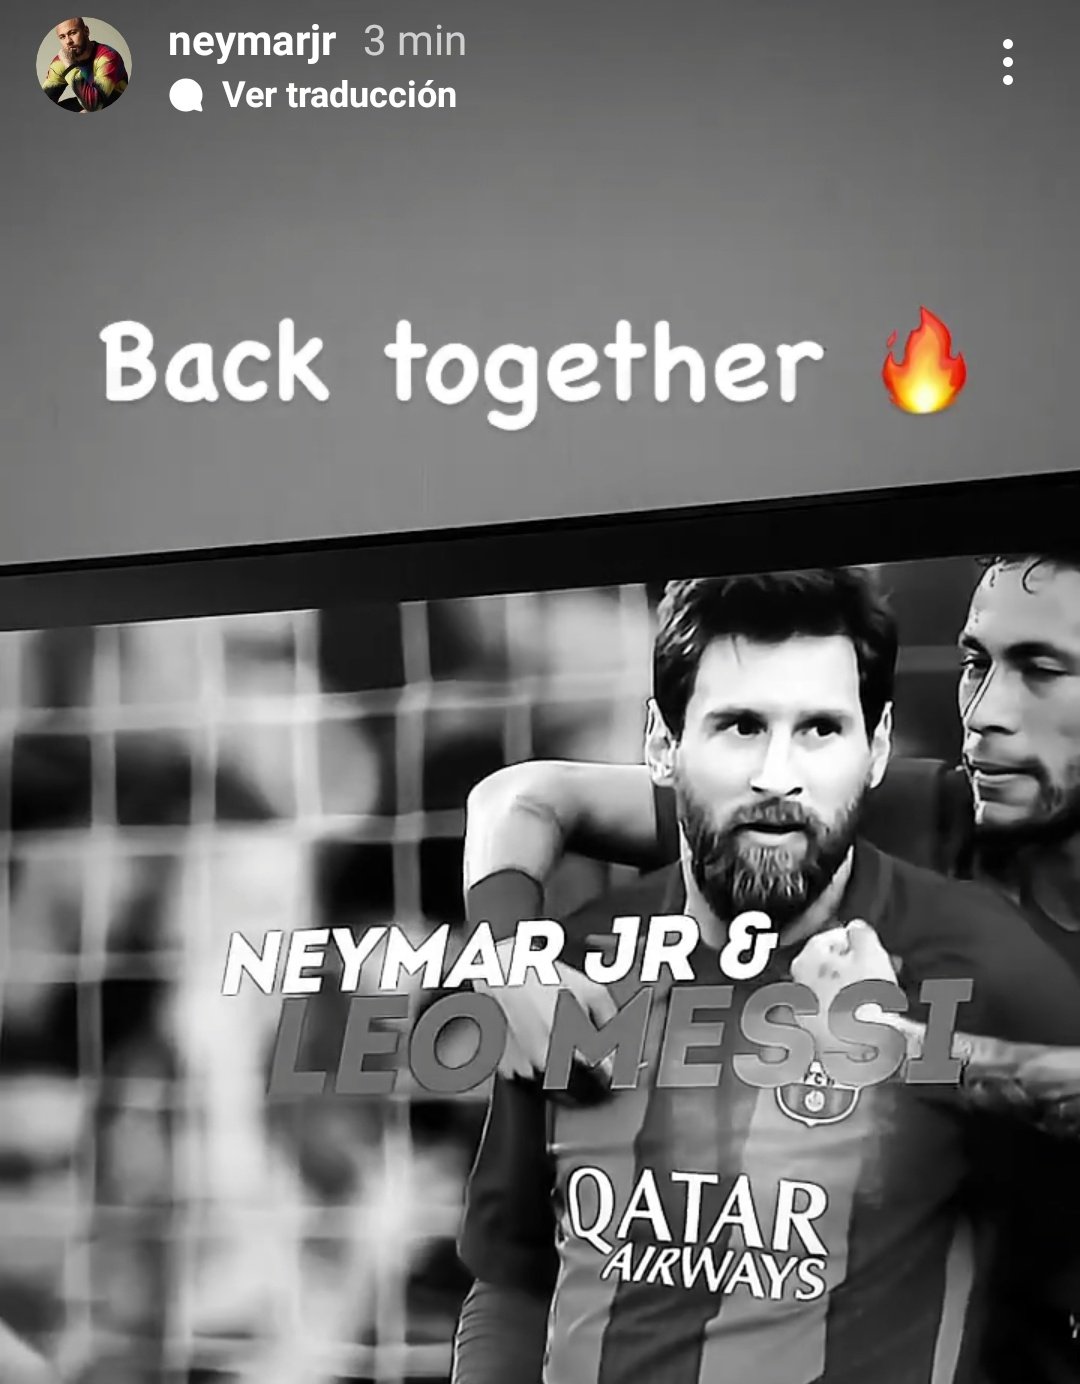 Neymar Y Messi el reencuentro más esperado